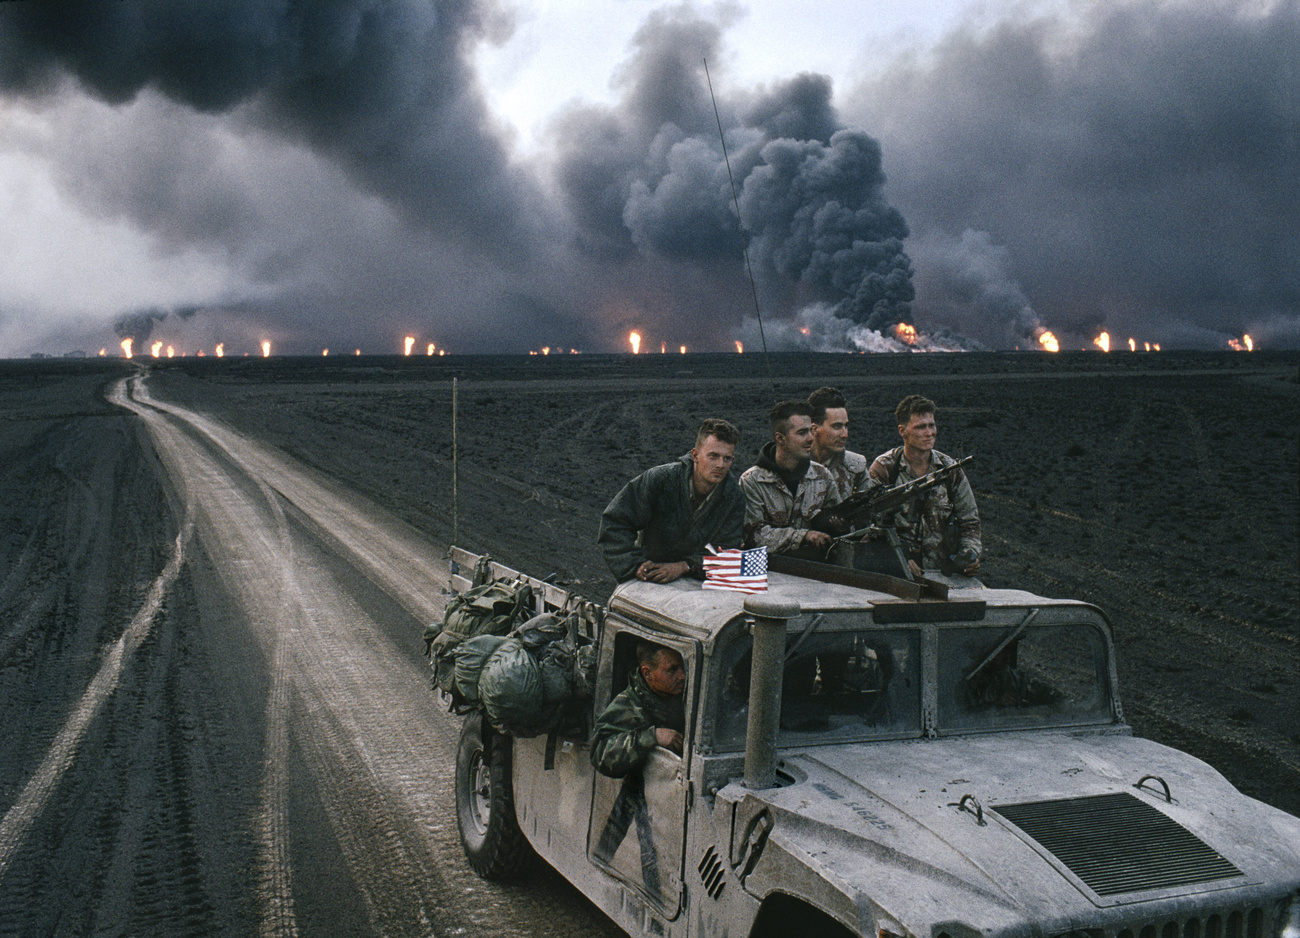 Kuwait, 1991. campos de petróleo em chamas, Marines americanos em primeiro plano.